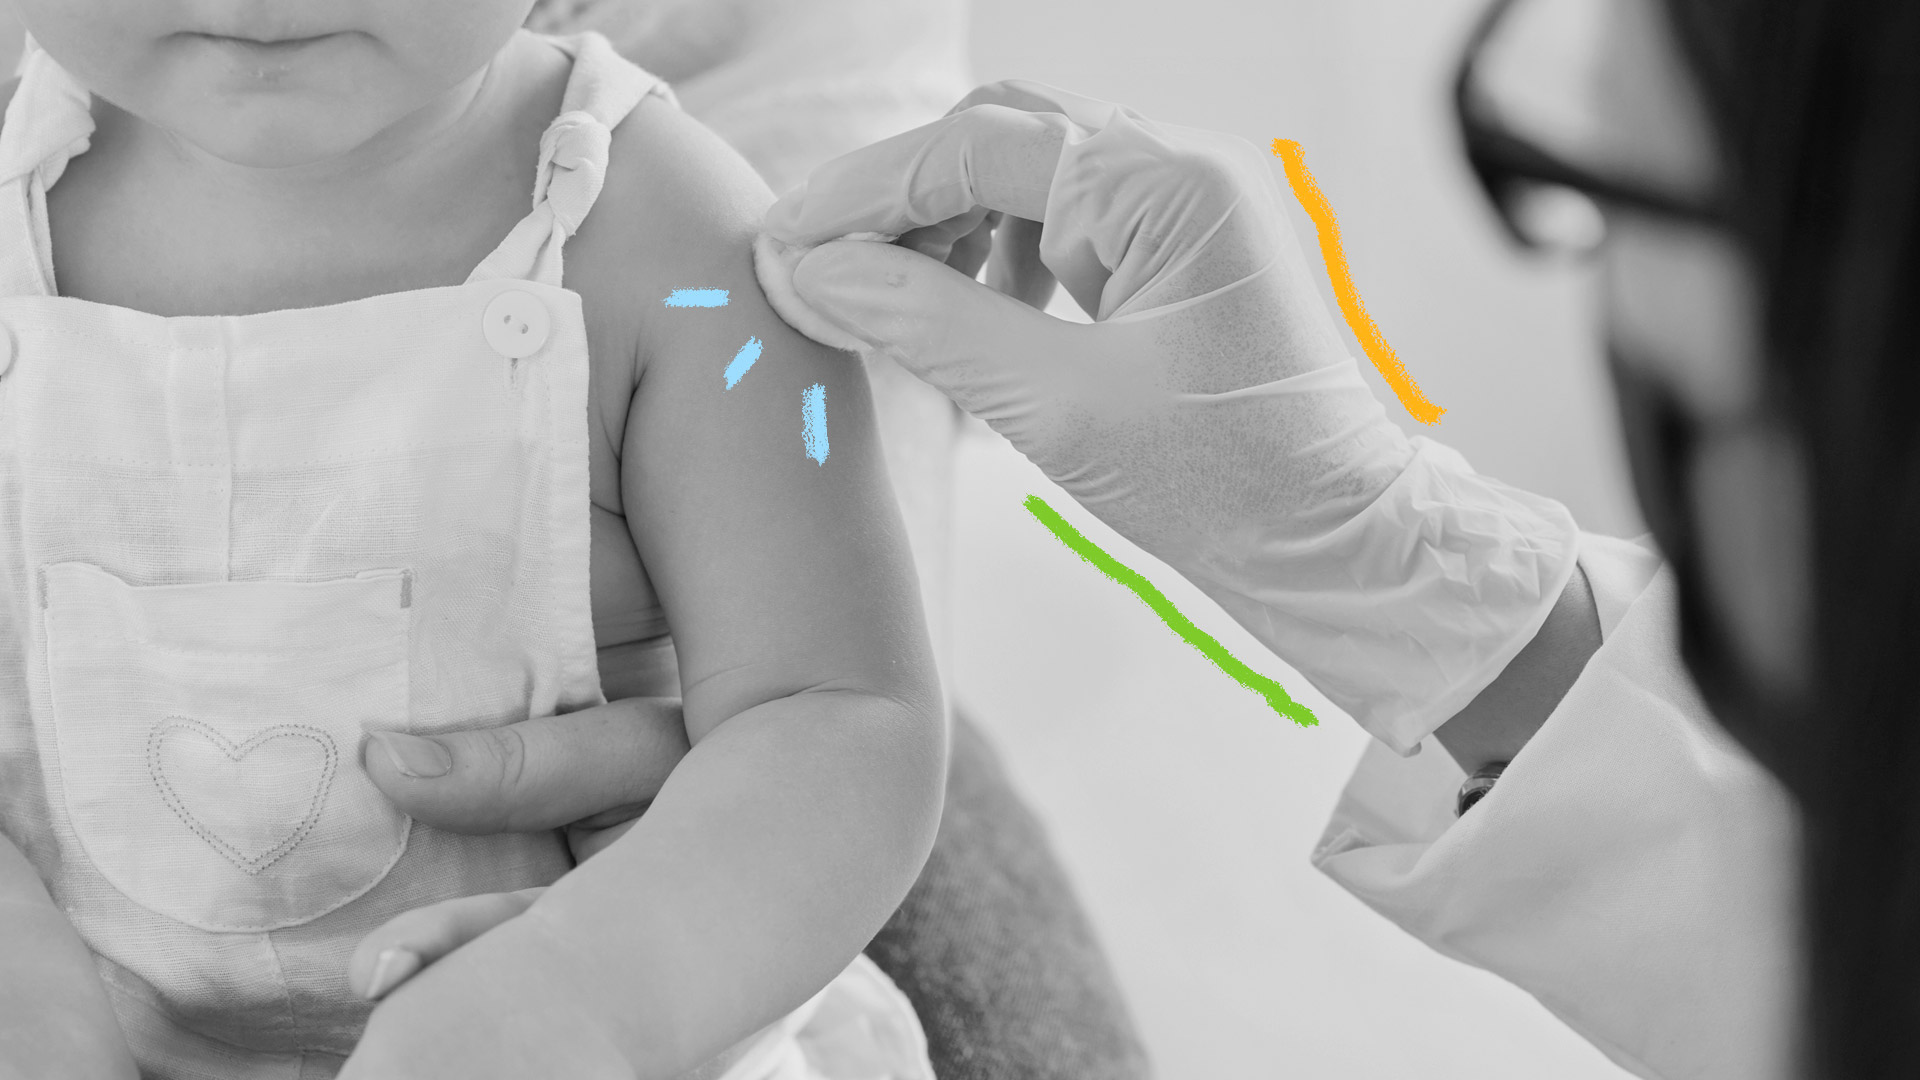 Foto em preto e branco mostra o detalhe de um braço de bebê recebendo uma injeção por um profissional da saúde